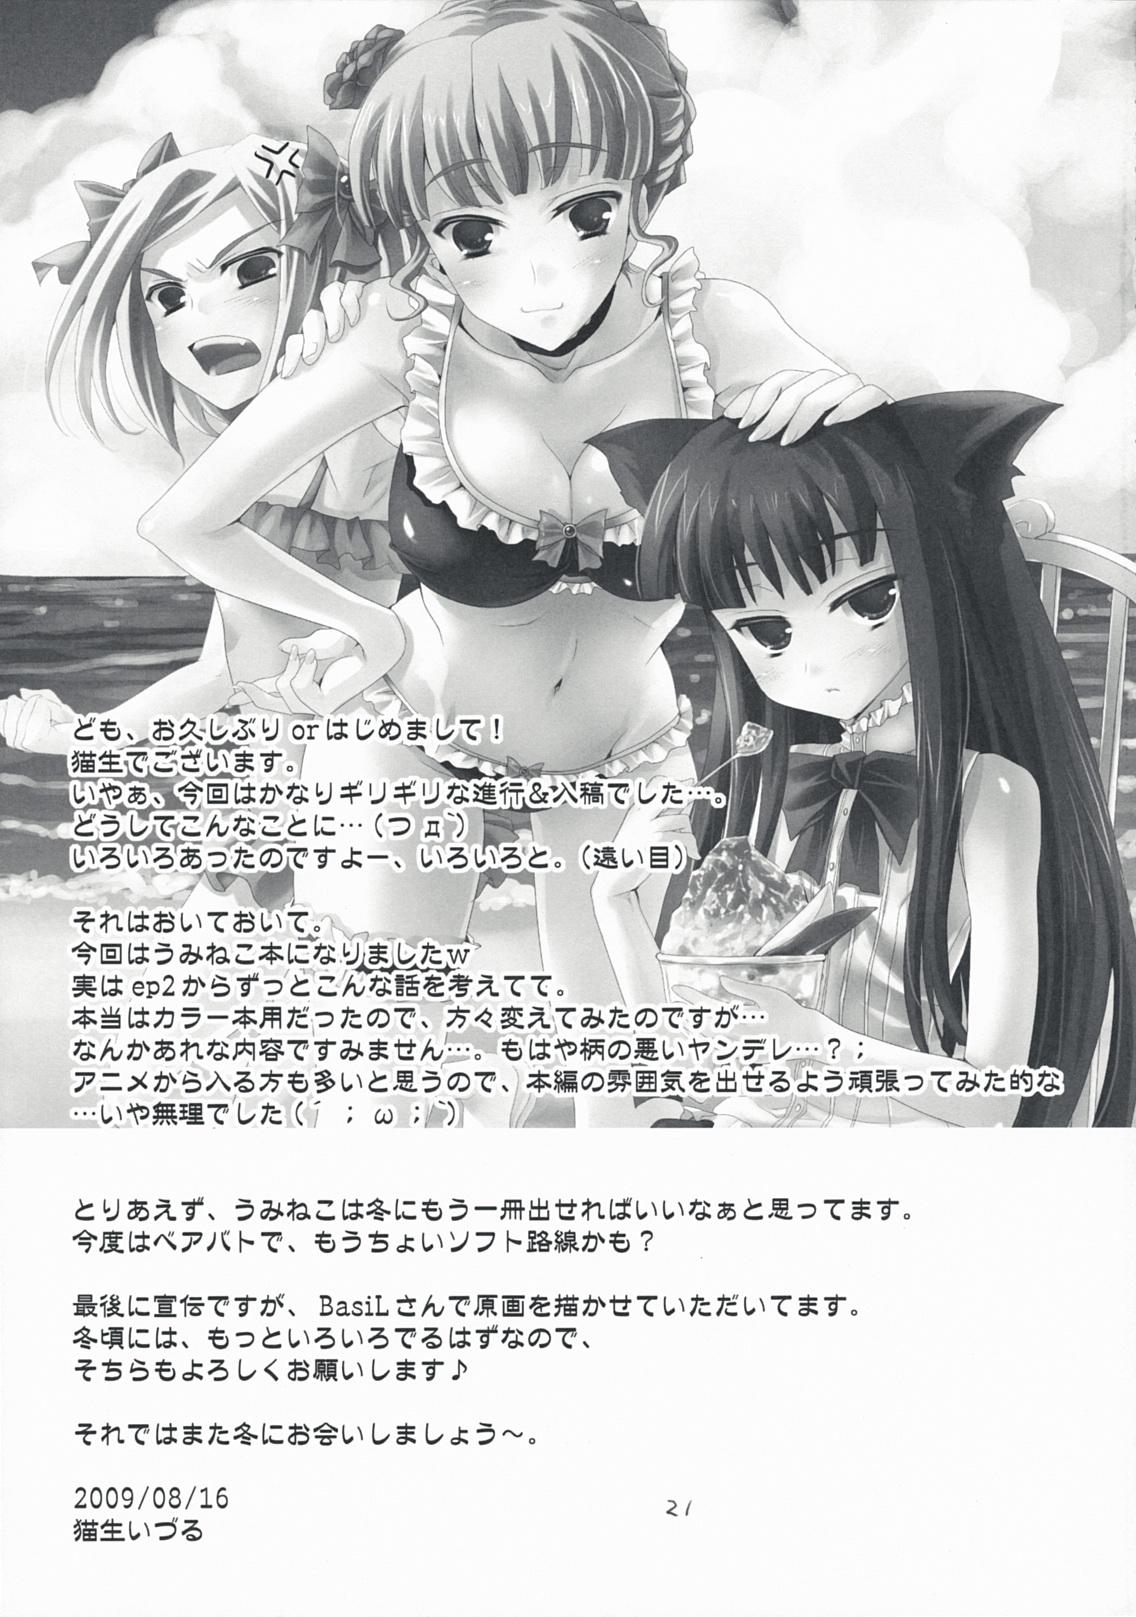 Leche The Queen Of Nightmare - Umineko no naku koro ni Backshots - Page 21